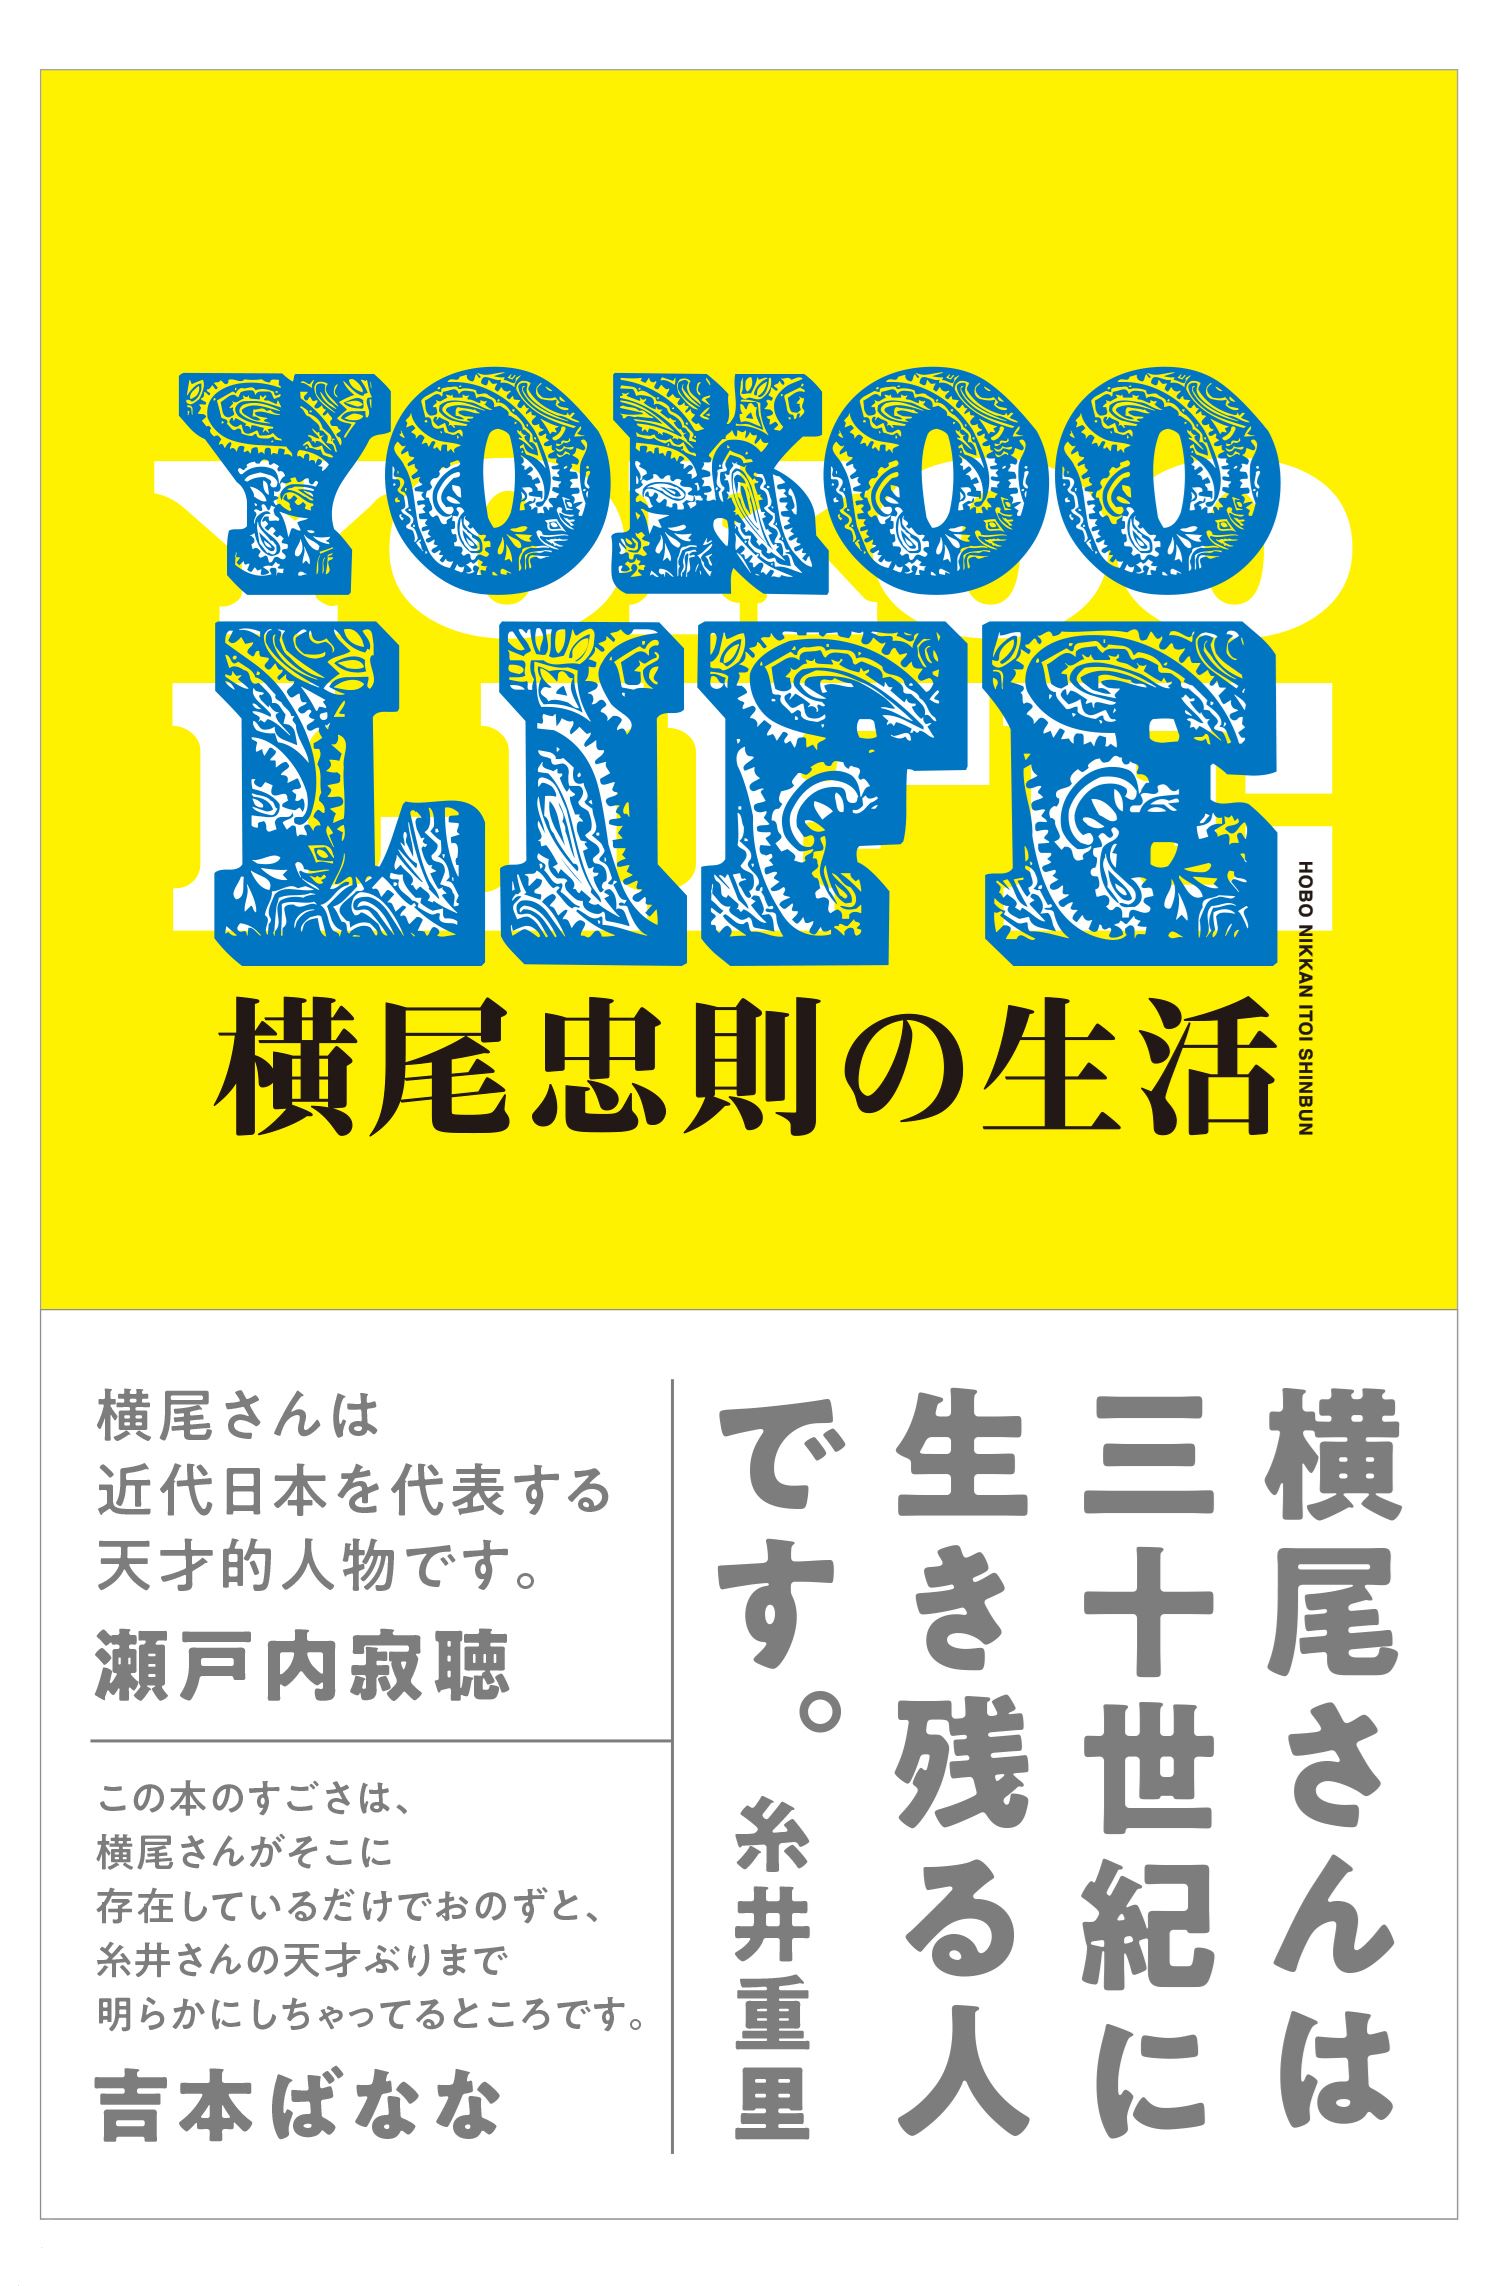 「YOKOO LIFE 横尾忠則の生活」